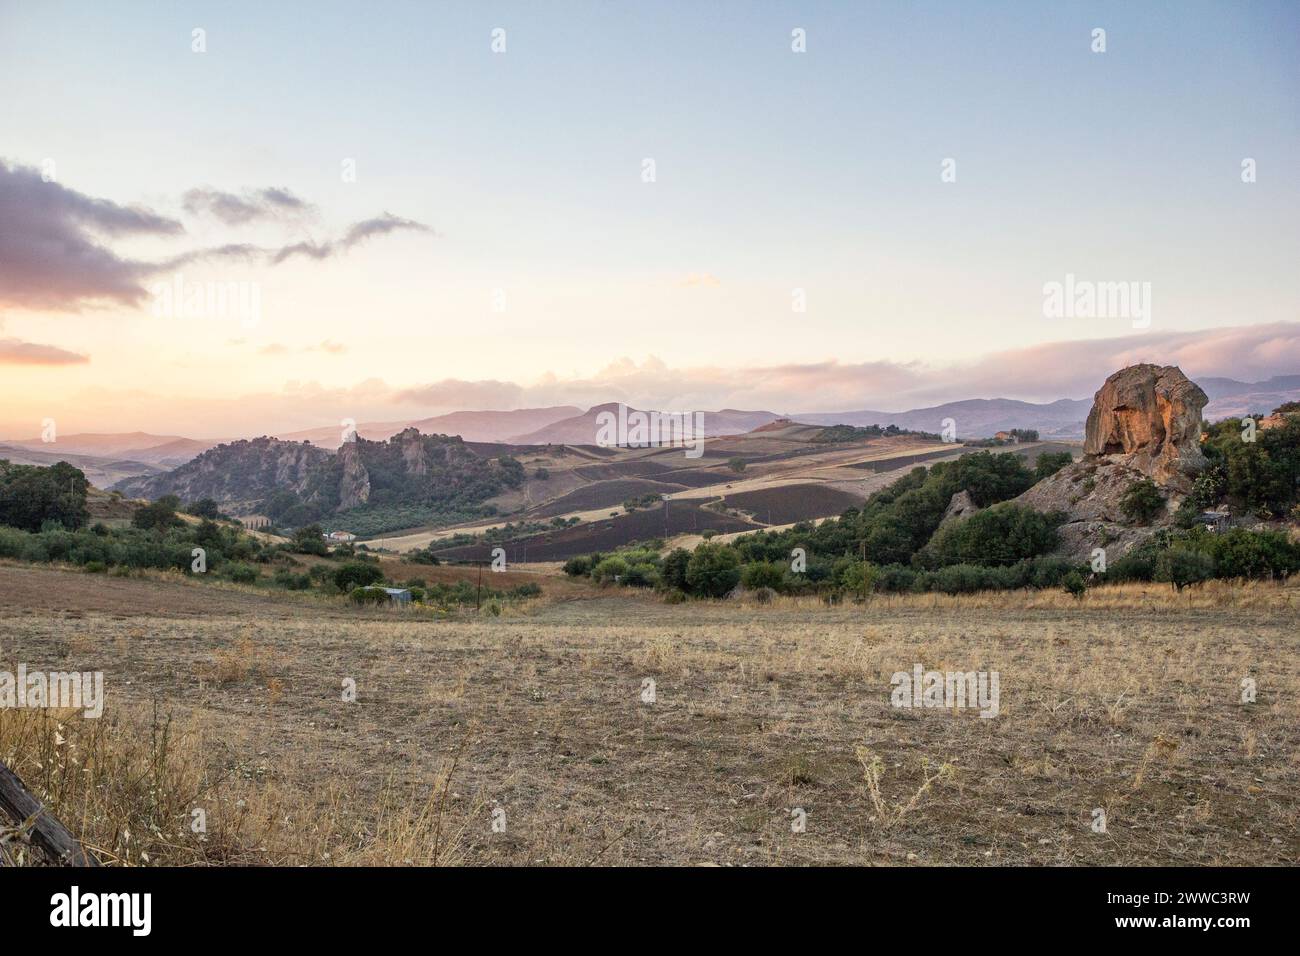 Italia, Sicilia, Enna, vista sul paesaggio al crepuscolo Foto Stock